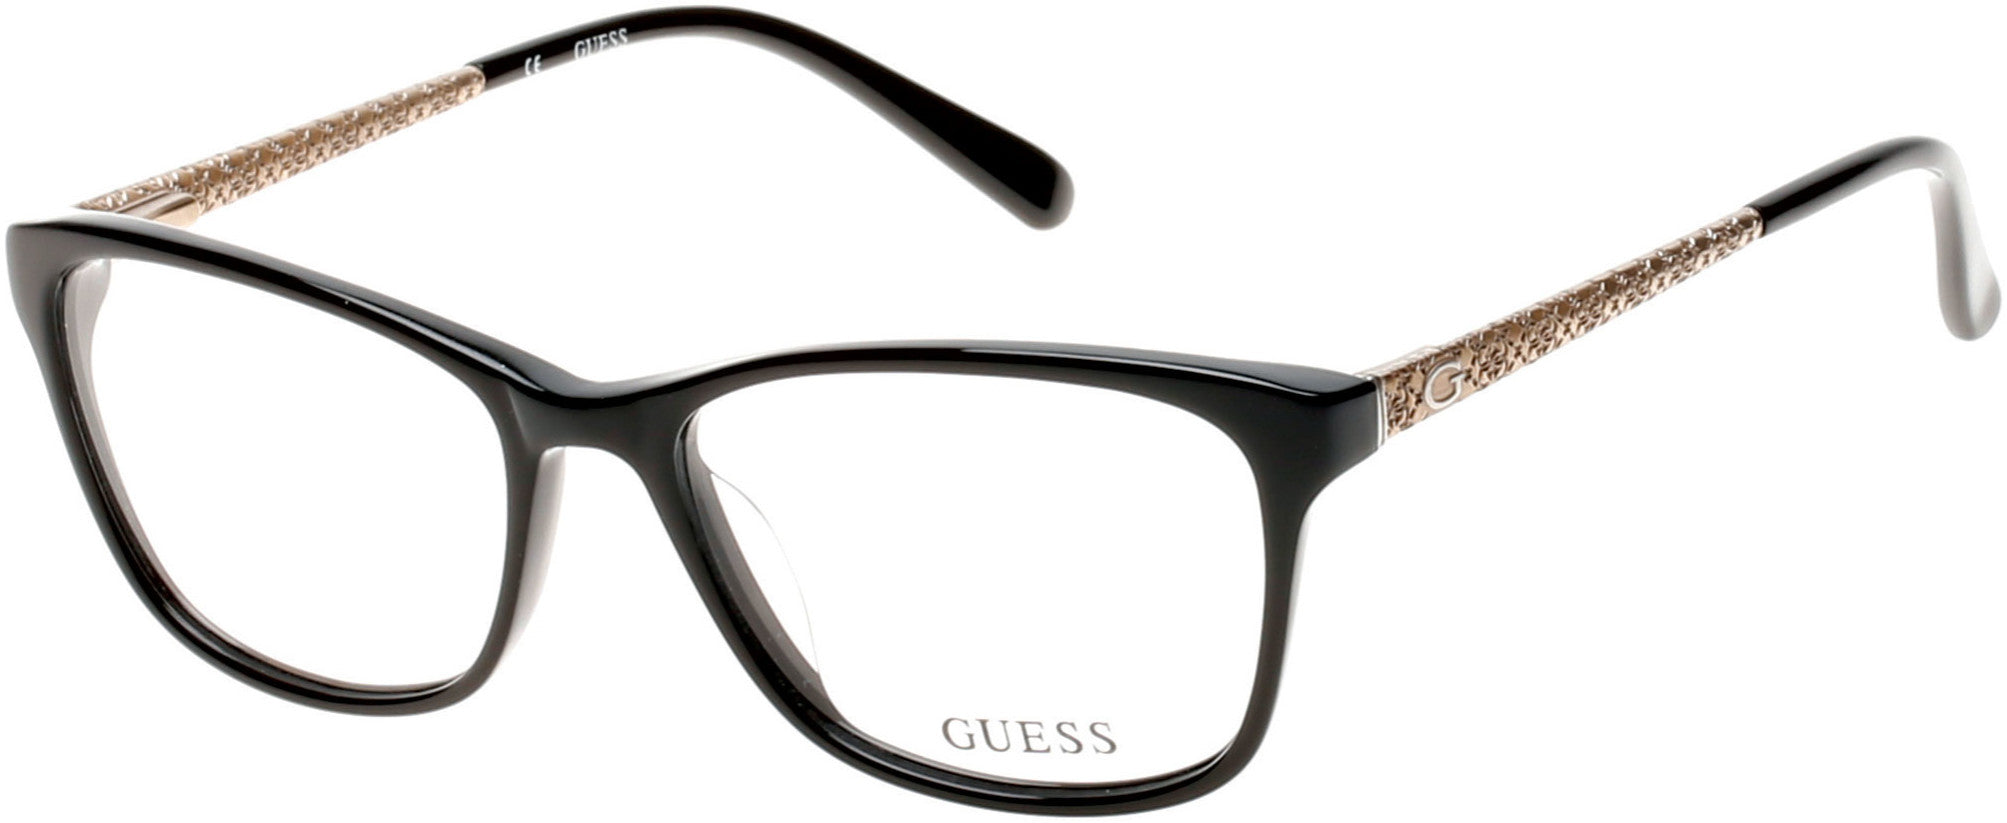 Guess GU2500 Square Eyeglasses 001-001 - Shiny Black